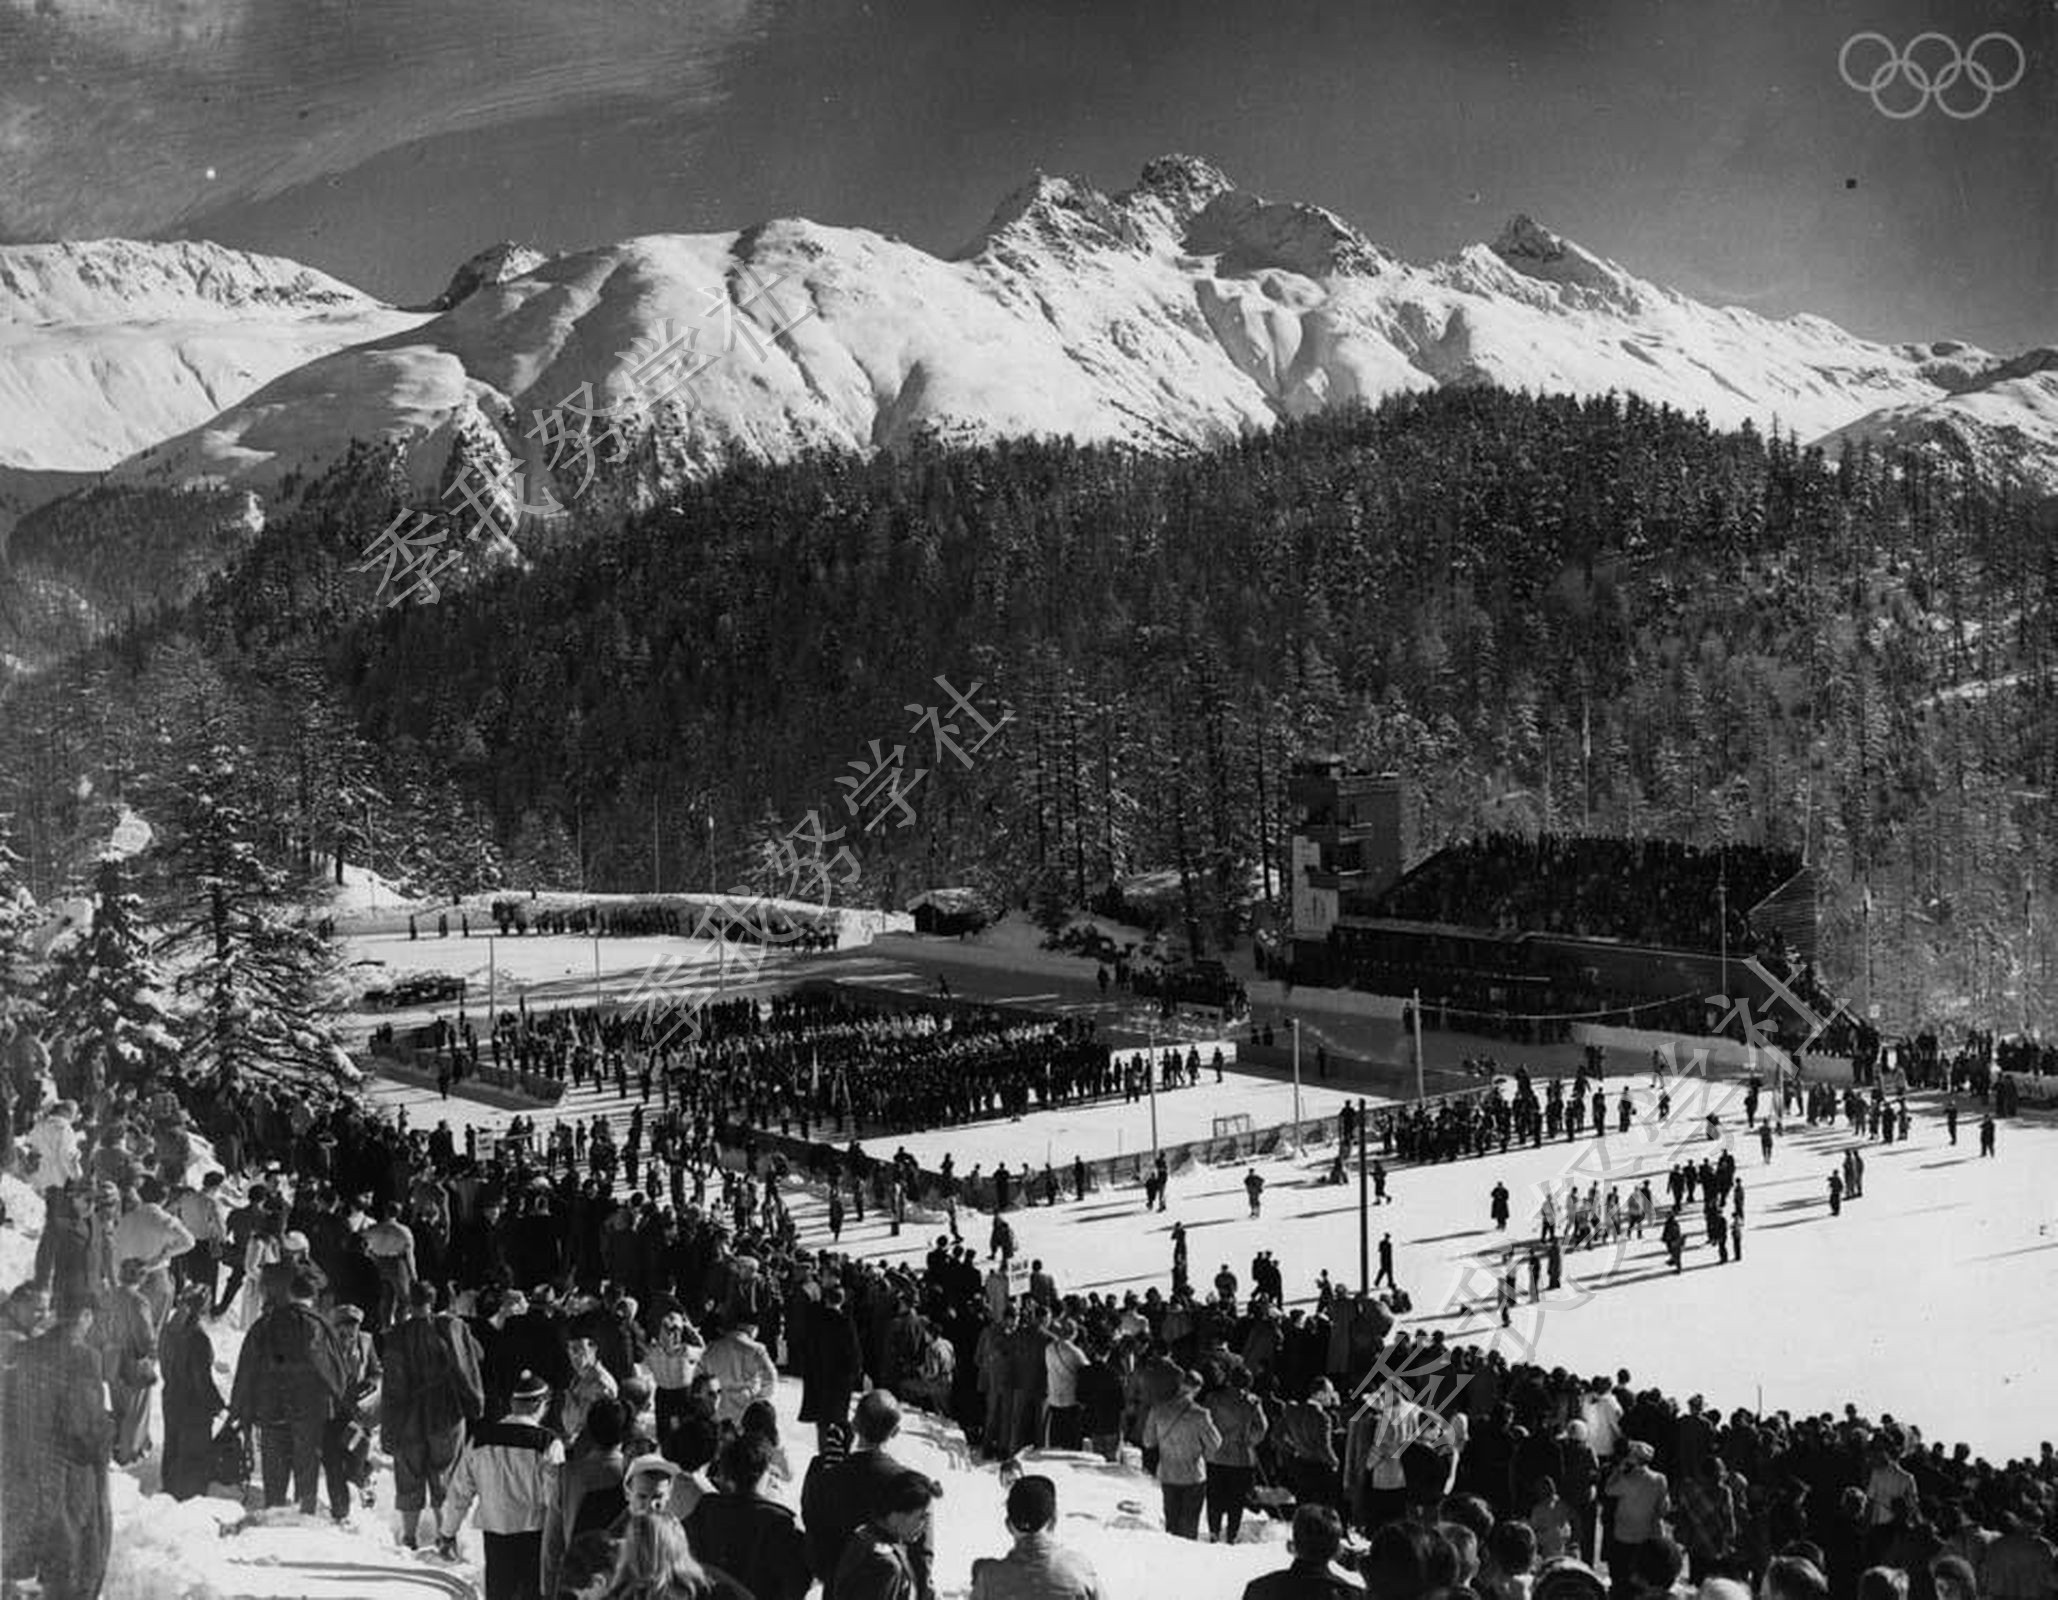 二战后首次奥运会:图说1948年伦敦奥运会开幕式_搜狐历史_搜狐网